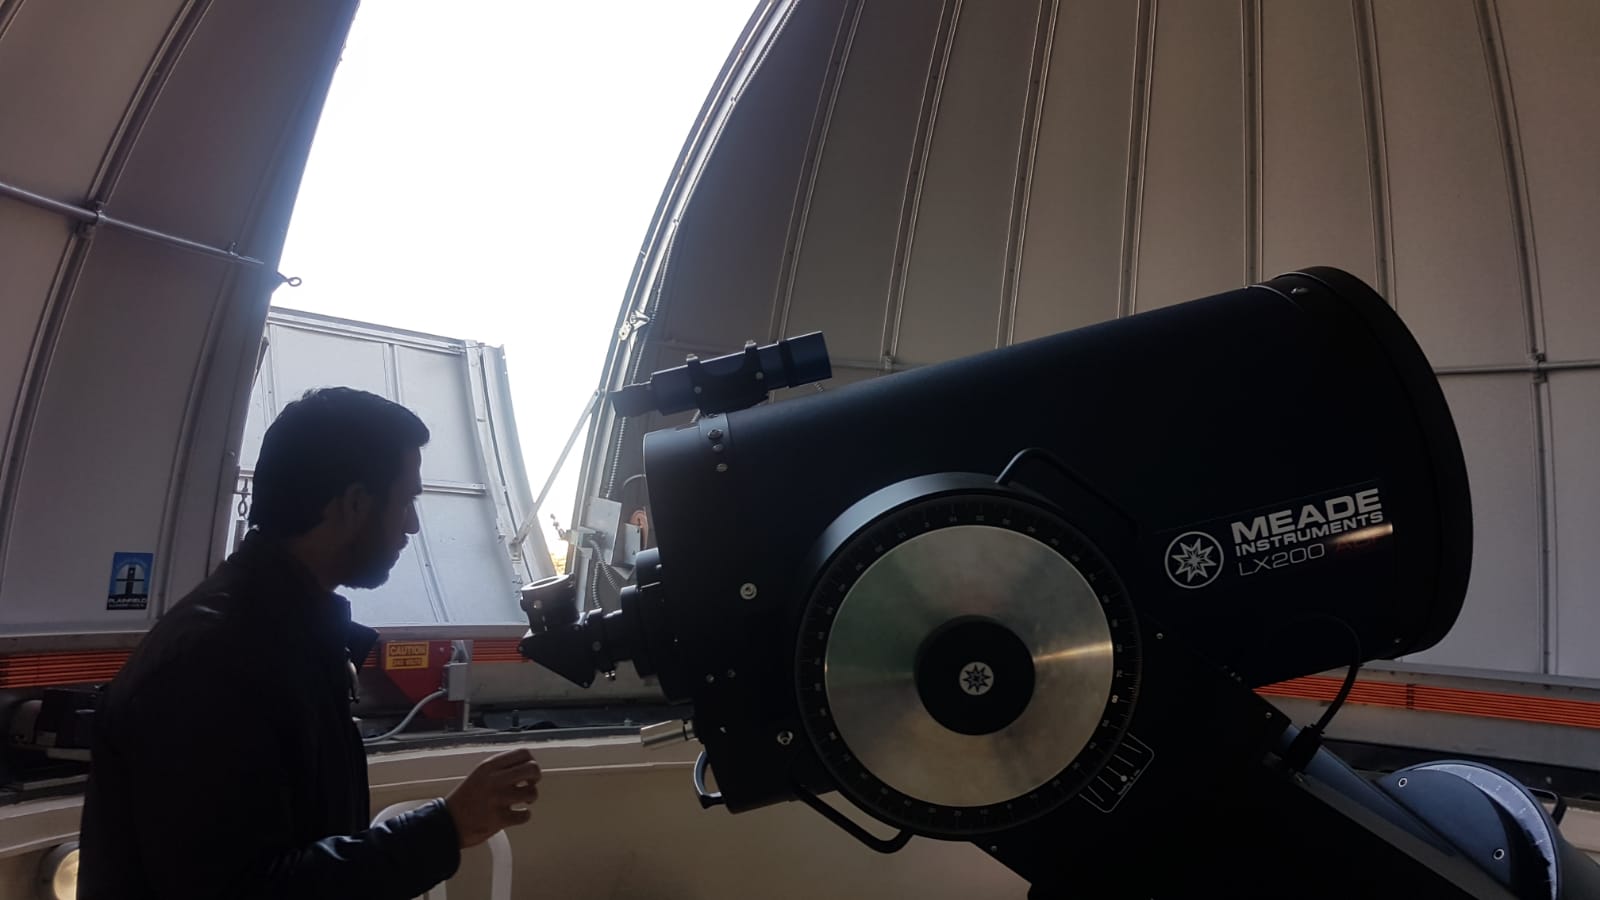 يضمّ المرصد الفلكي تلسكوباً من نوع 16 إنشاً هو الأكبر والأكثر تطوراً في فلسطين (إندبندنت عربية)